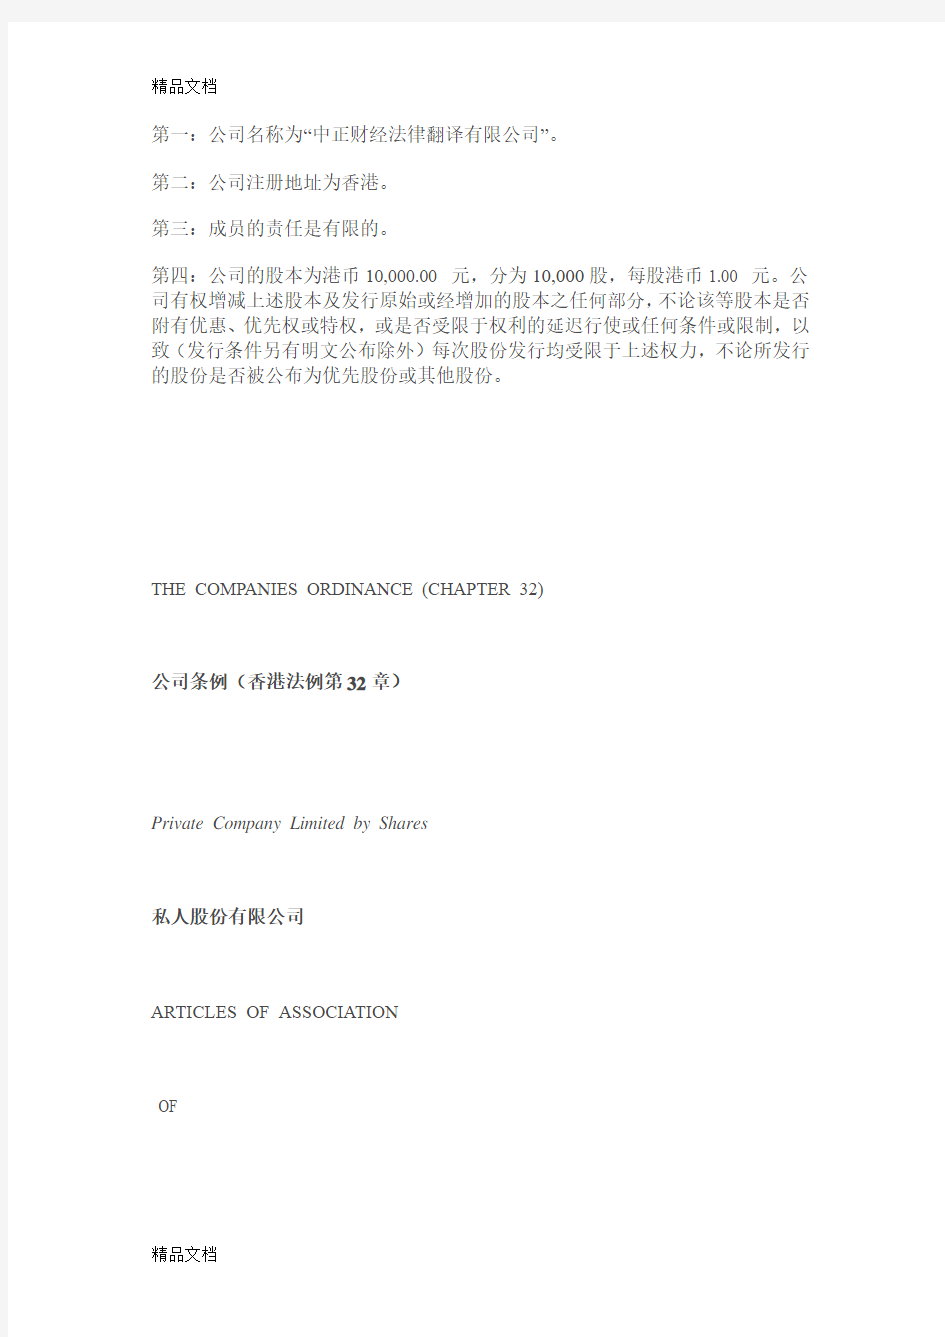 最新THE COMPANIES ORDINANCE香港公司章程中英文资料